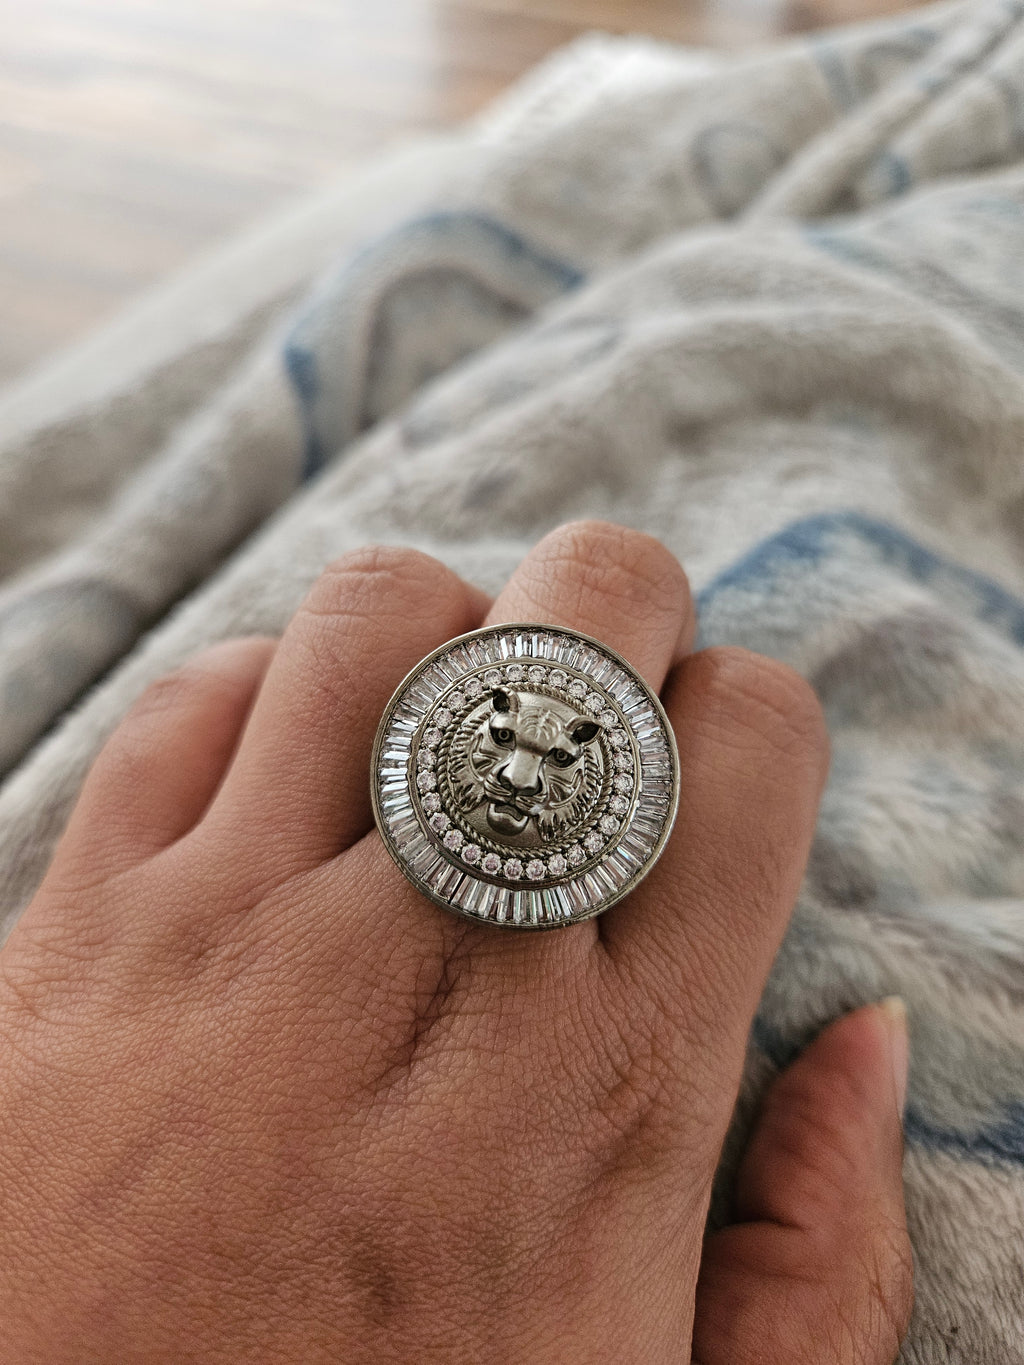 Sabyasachi inspired  ring